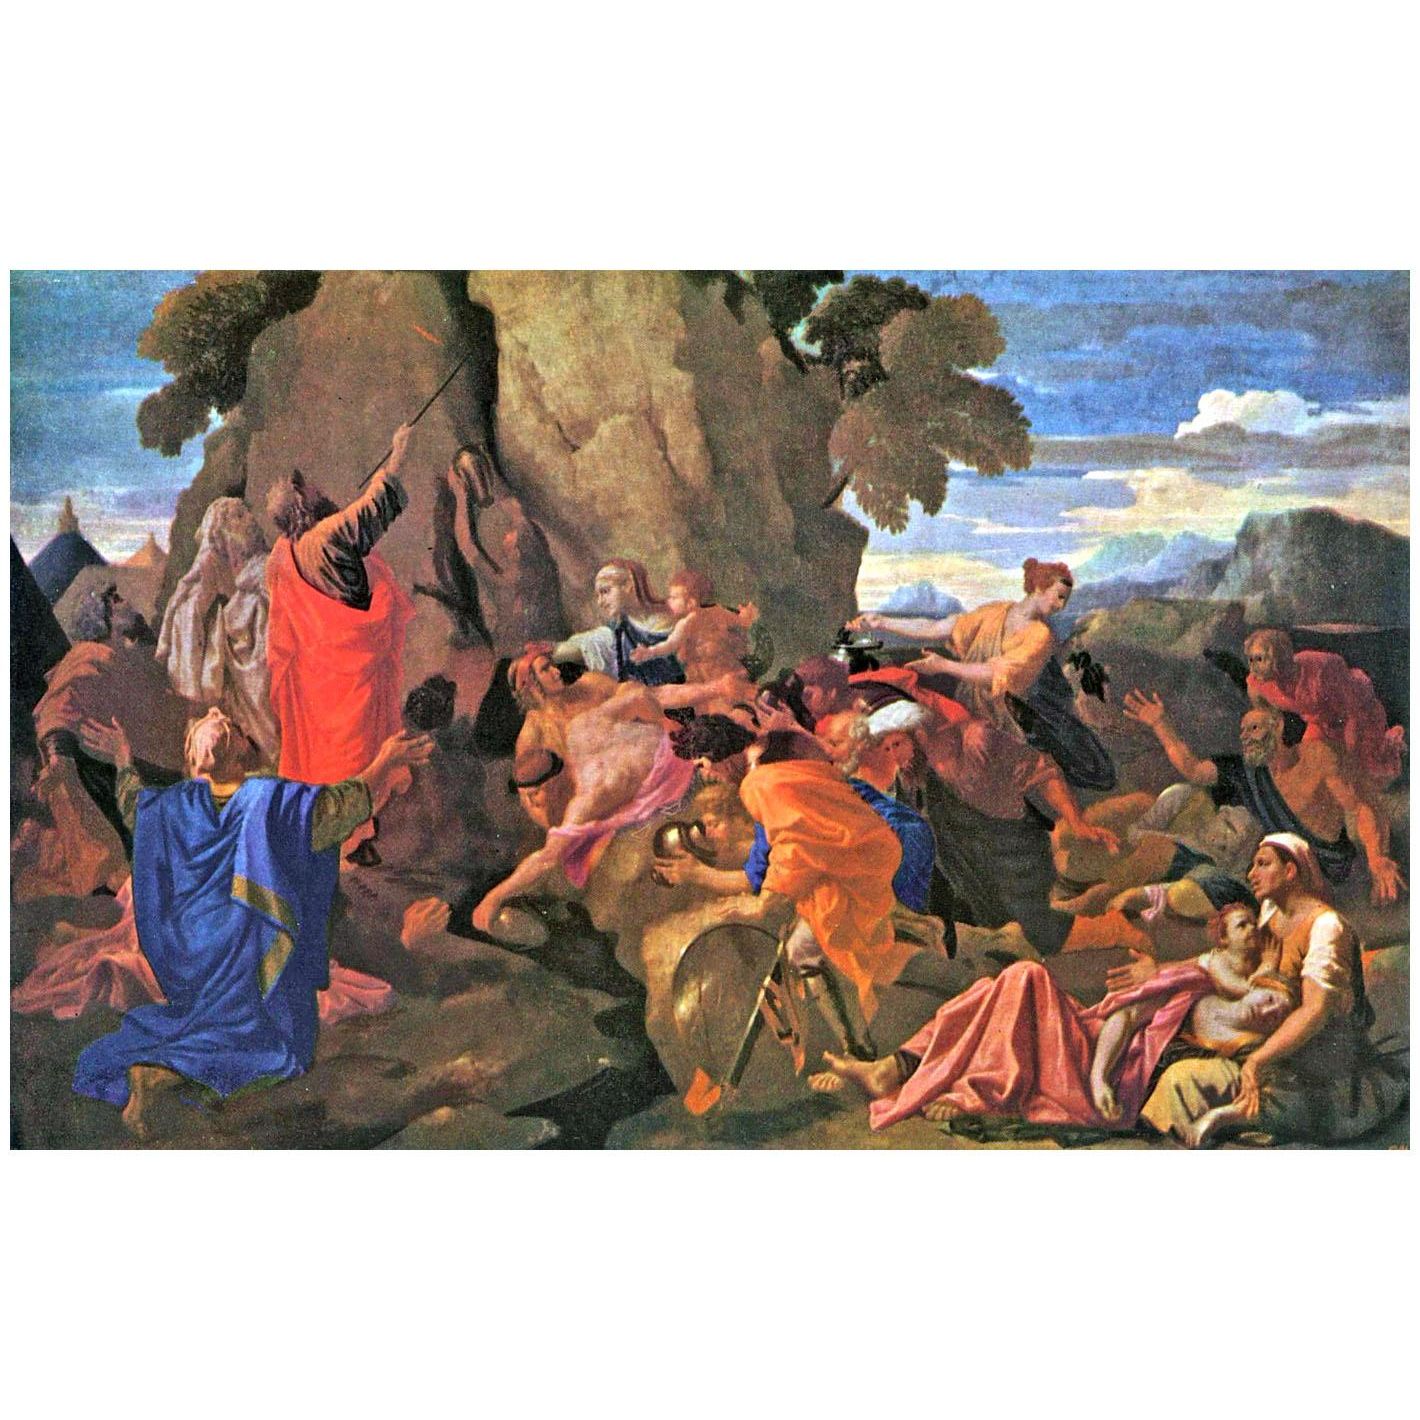 Nicolas Poussin. Moïse frappant l'eau du rocher. 1649. Hermitage Museum